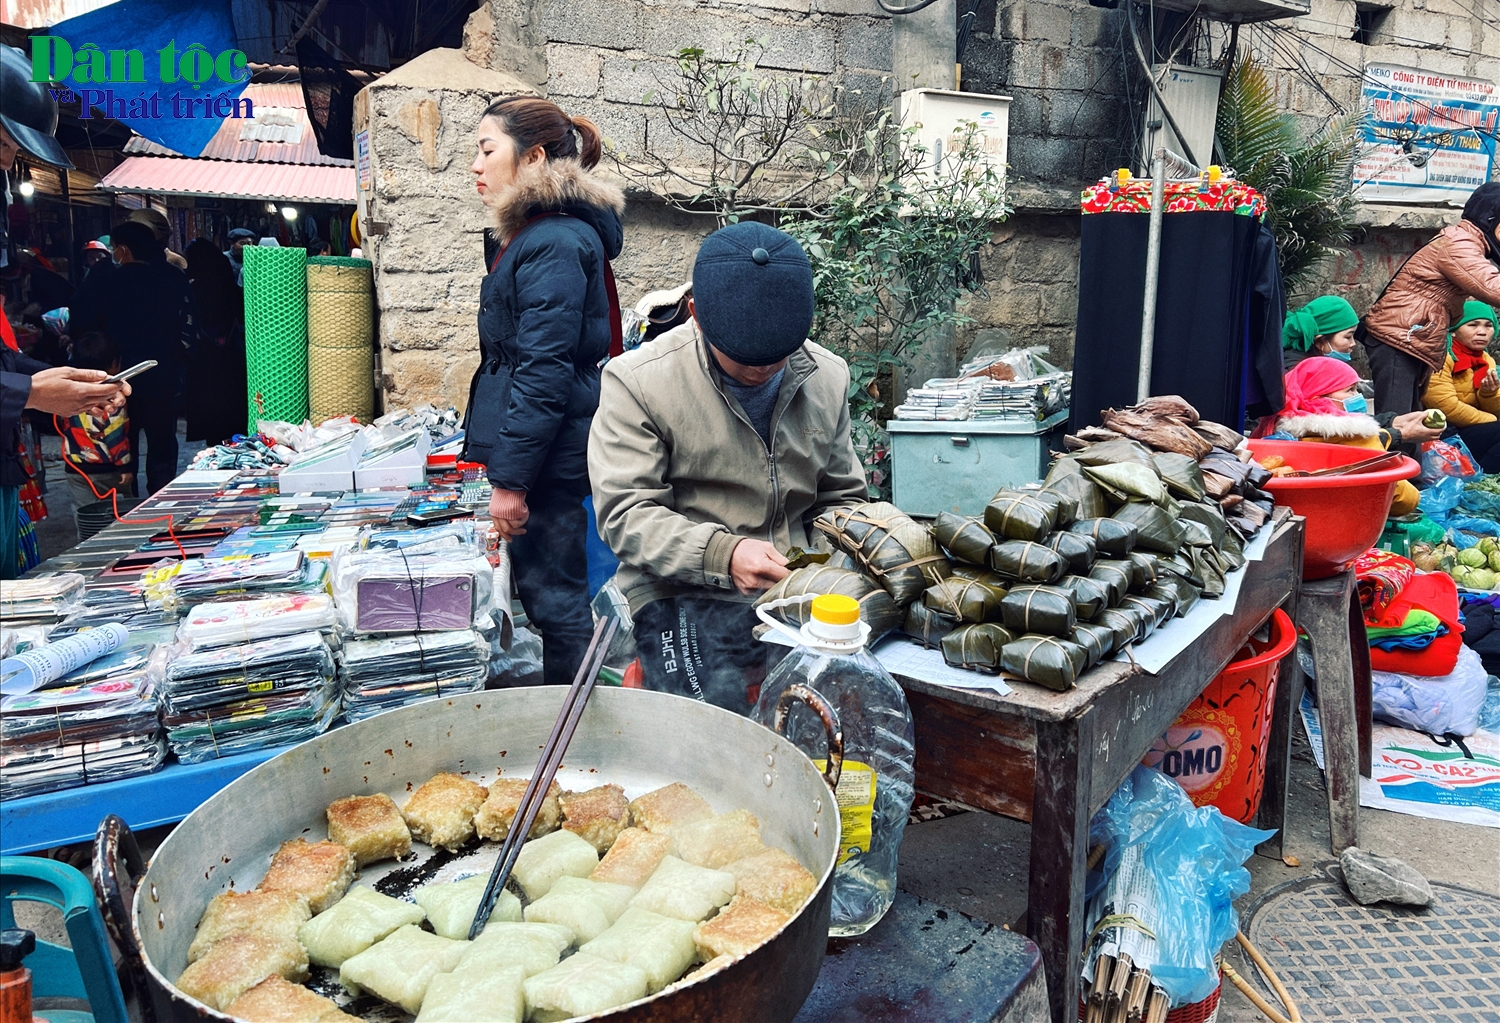 Ngay lối vào chợ, du khách và người dân đi chợ sớm không sợ đói bụng, vì đã có rất sẵn những hàng đồ ăn, bánh đủ loại phục vụ tại chỗ